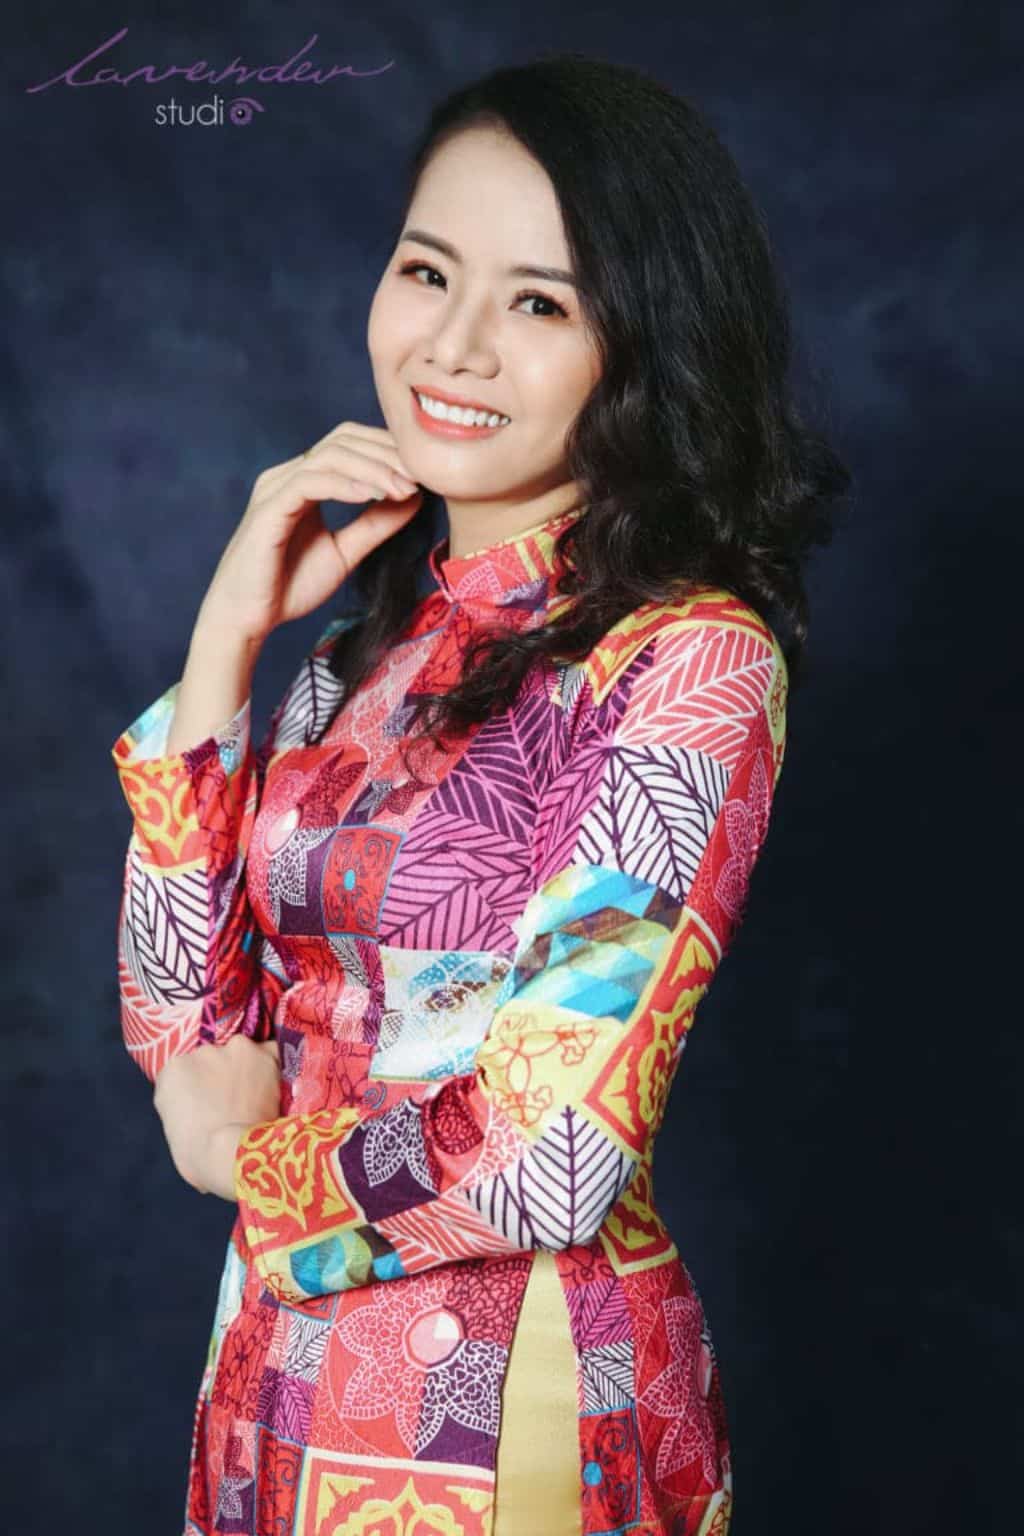 Chụp hình Tết với áo dài tôn vinh vẻ đẹp người phụ nữ Việt